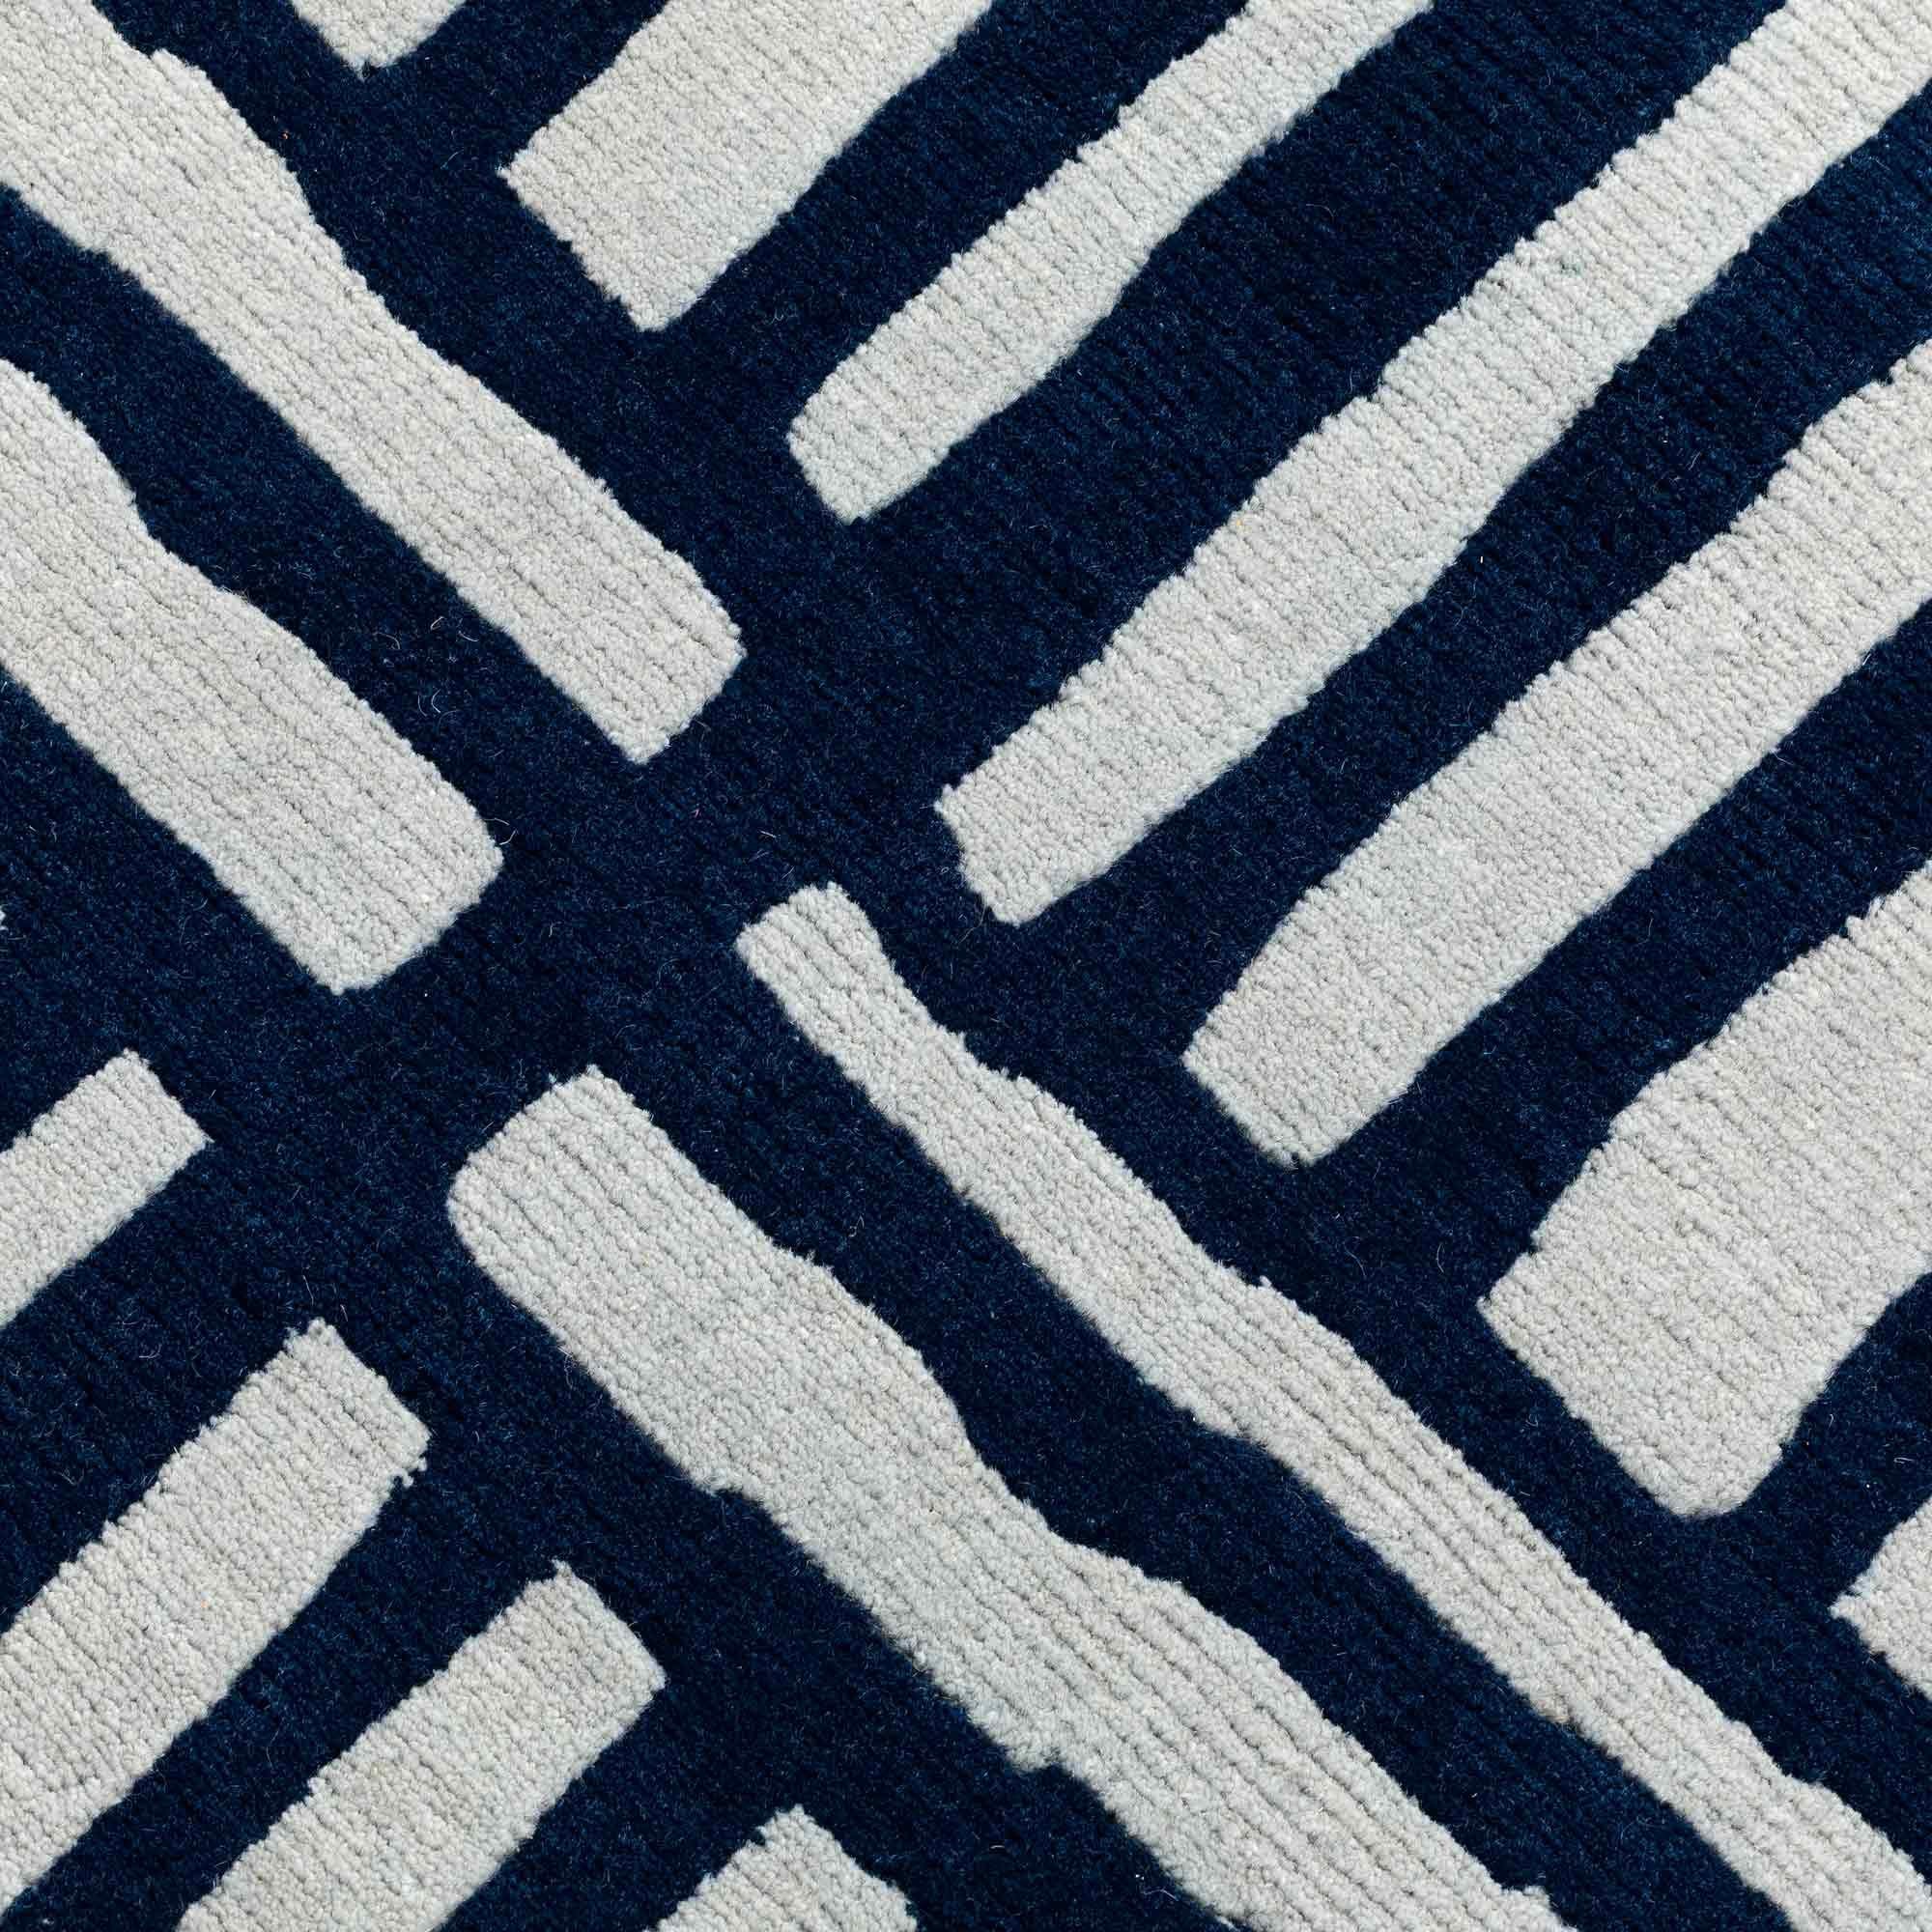 Tapis en laine GJS12 de George J. Sowden pour la collection Post Design/Memphis

Un tapis en laine fabriqué à la main par différents artisans népalais. Fabriqué dans une édition limitée de 36 exemplaires signés et numérotés.

Le tapis étant